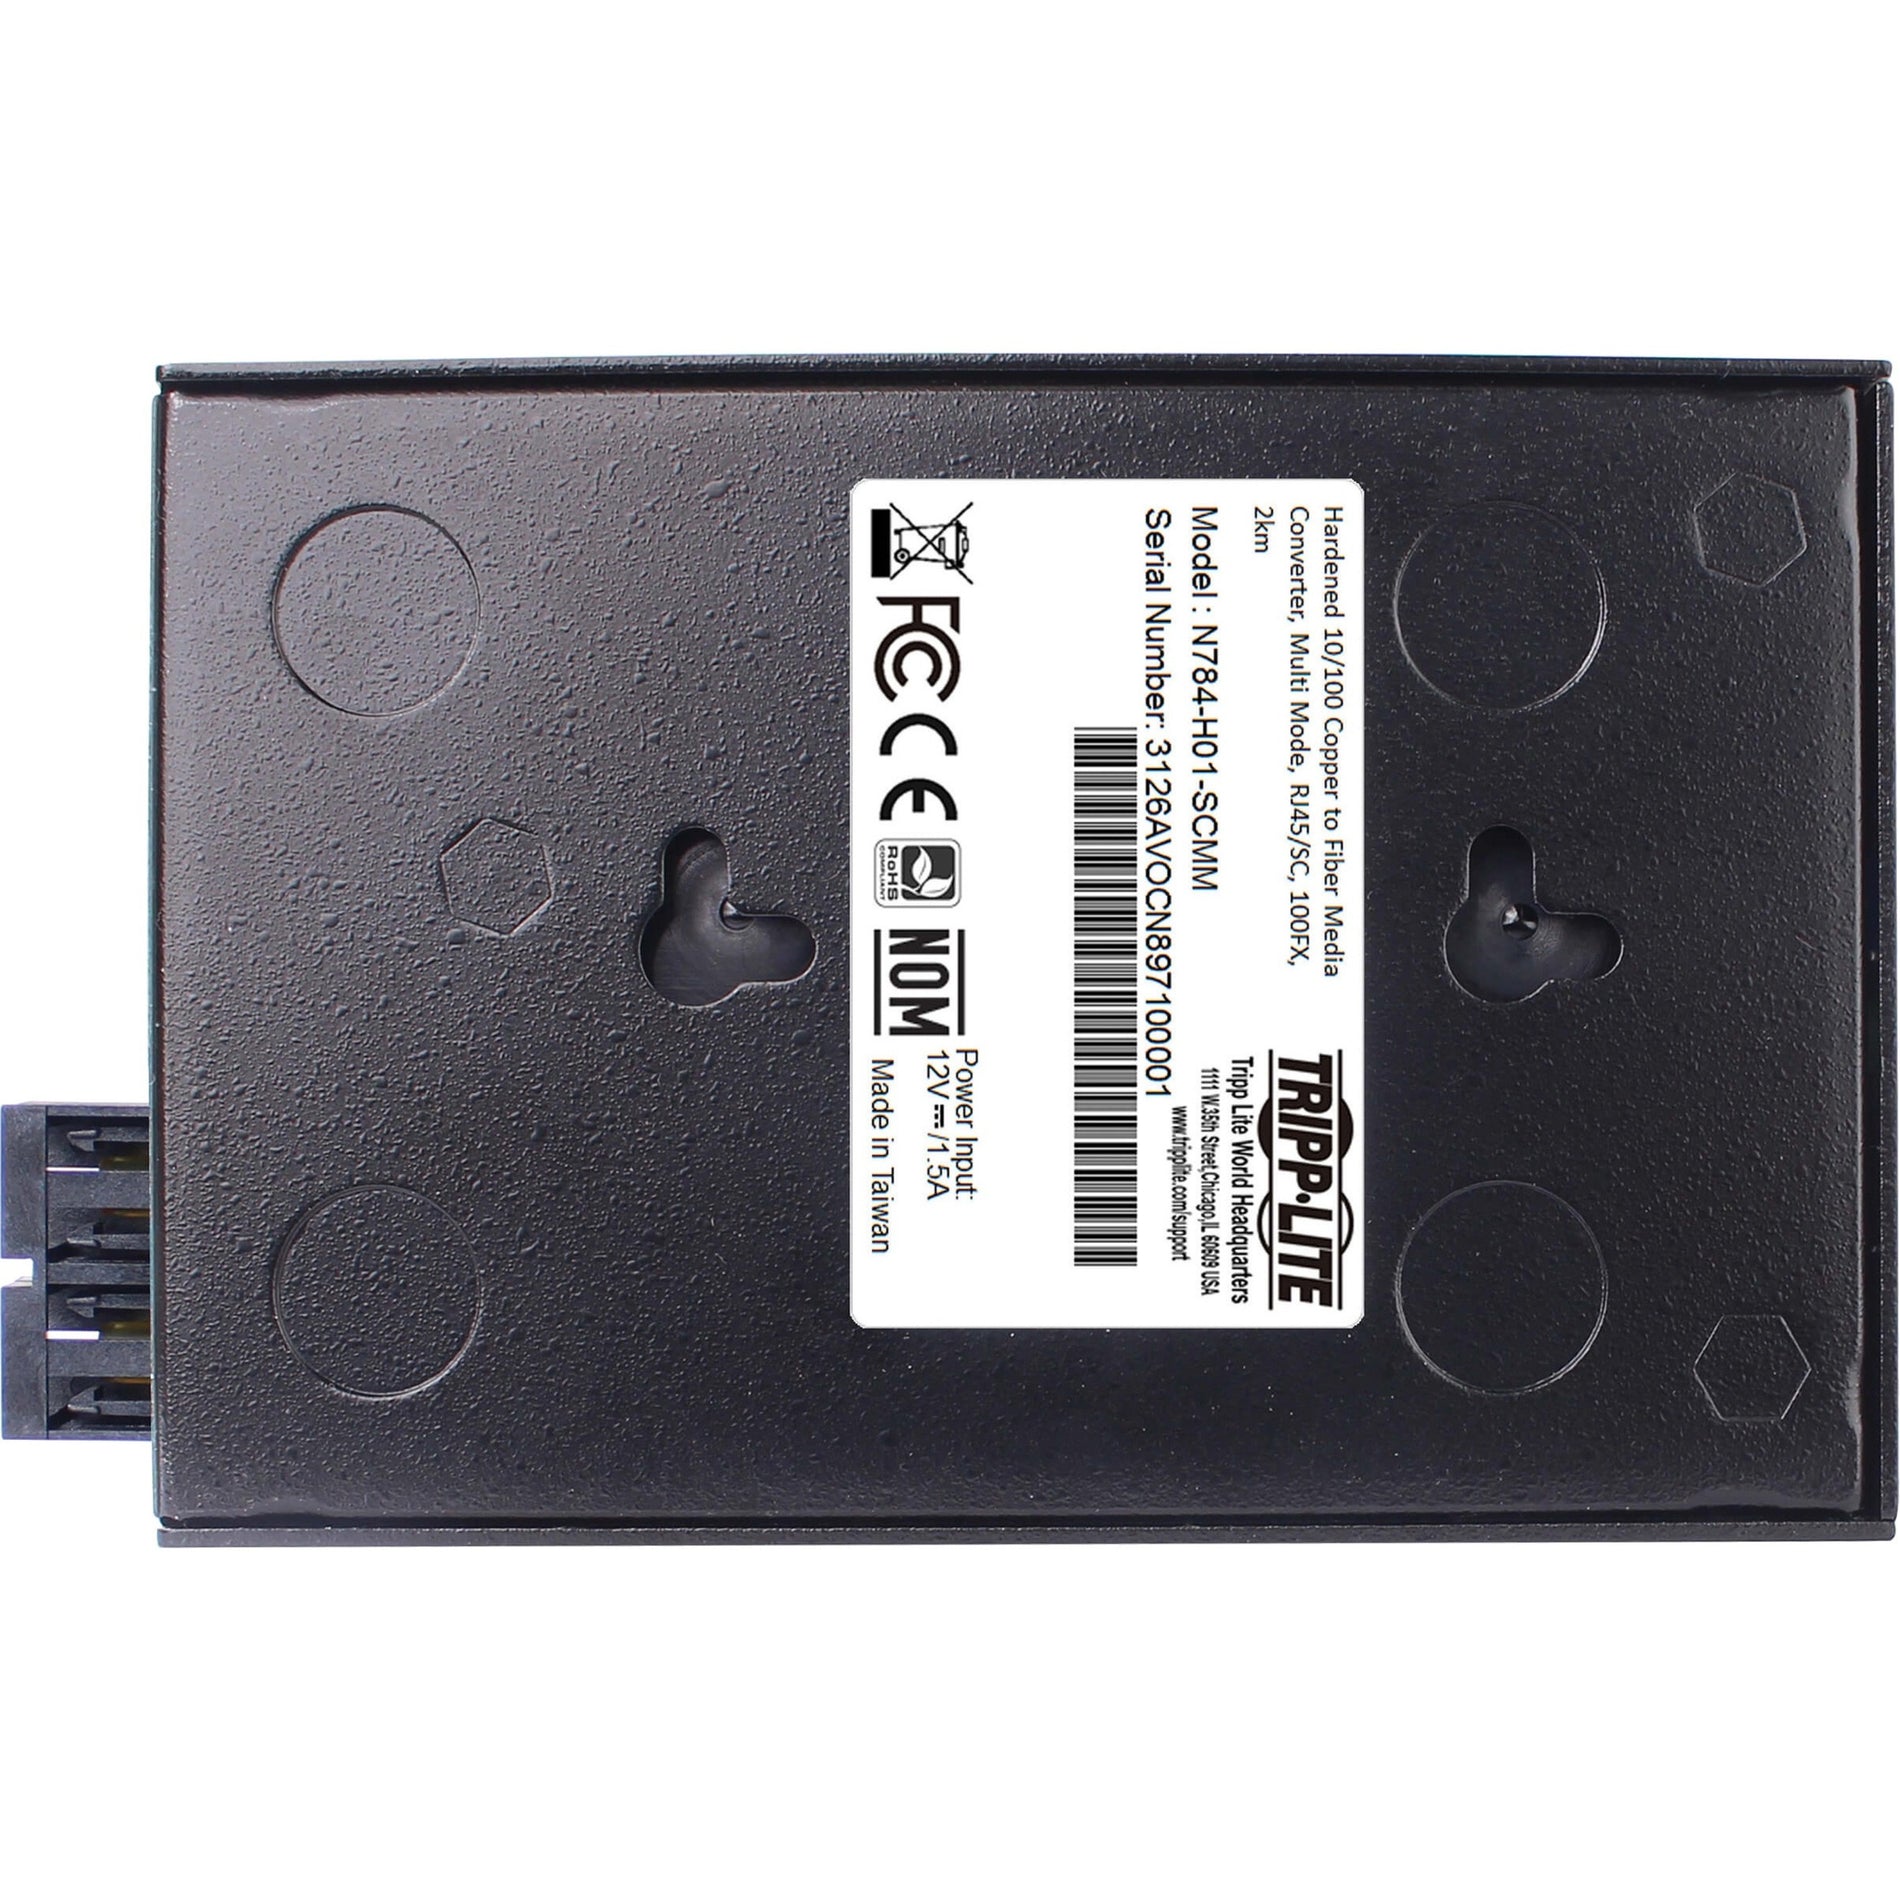 Tripp Lite N784-H01-SCMM Transceiver/Media Converter, Hardened Copper to Fiber, 2 Year Warranty, TAA Compliant